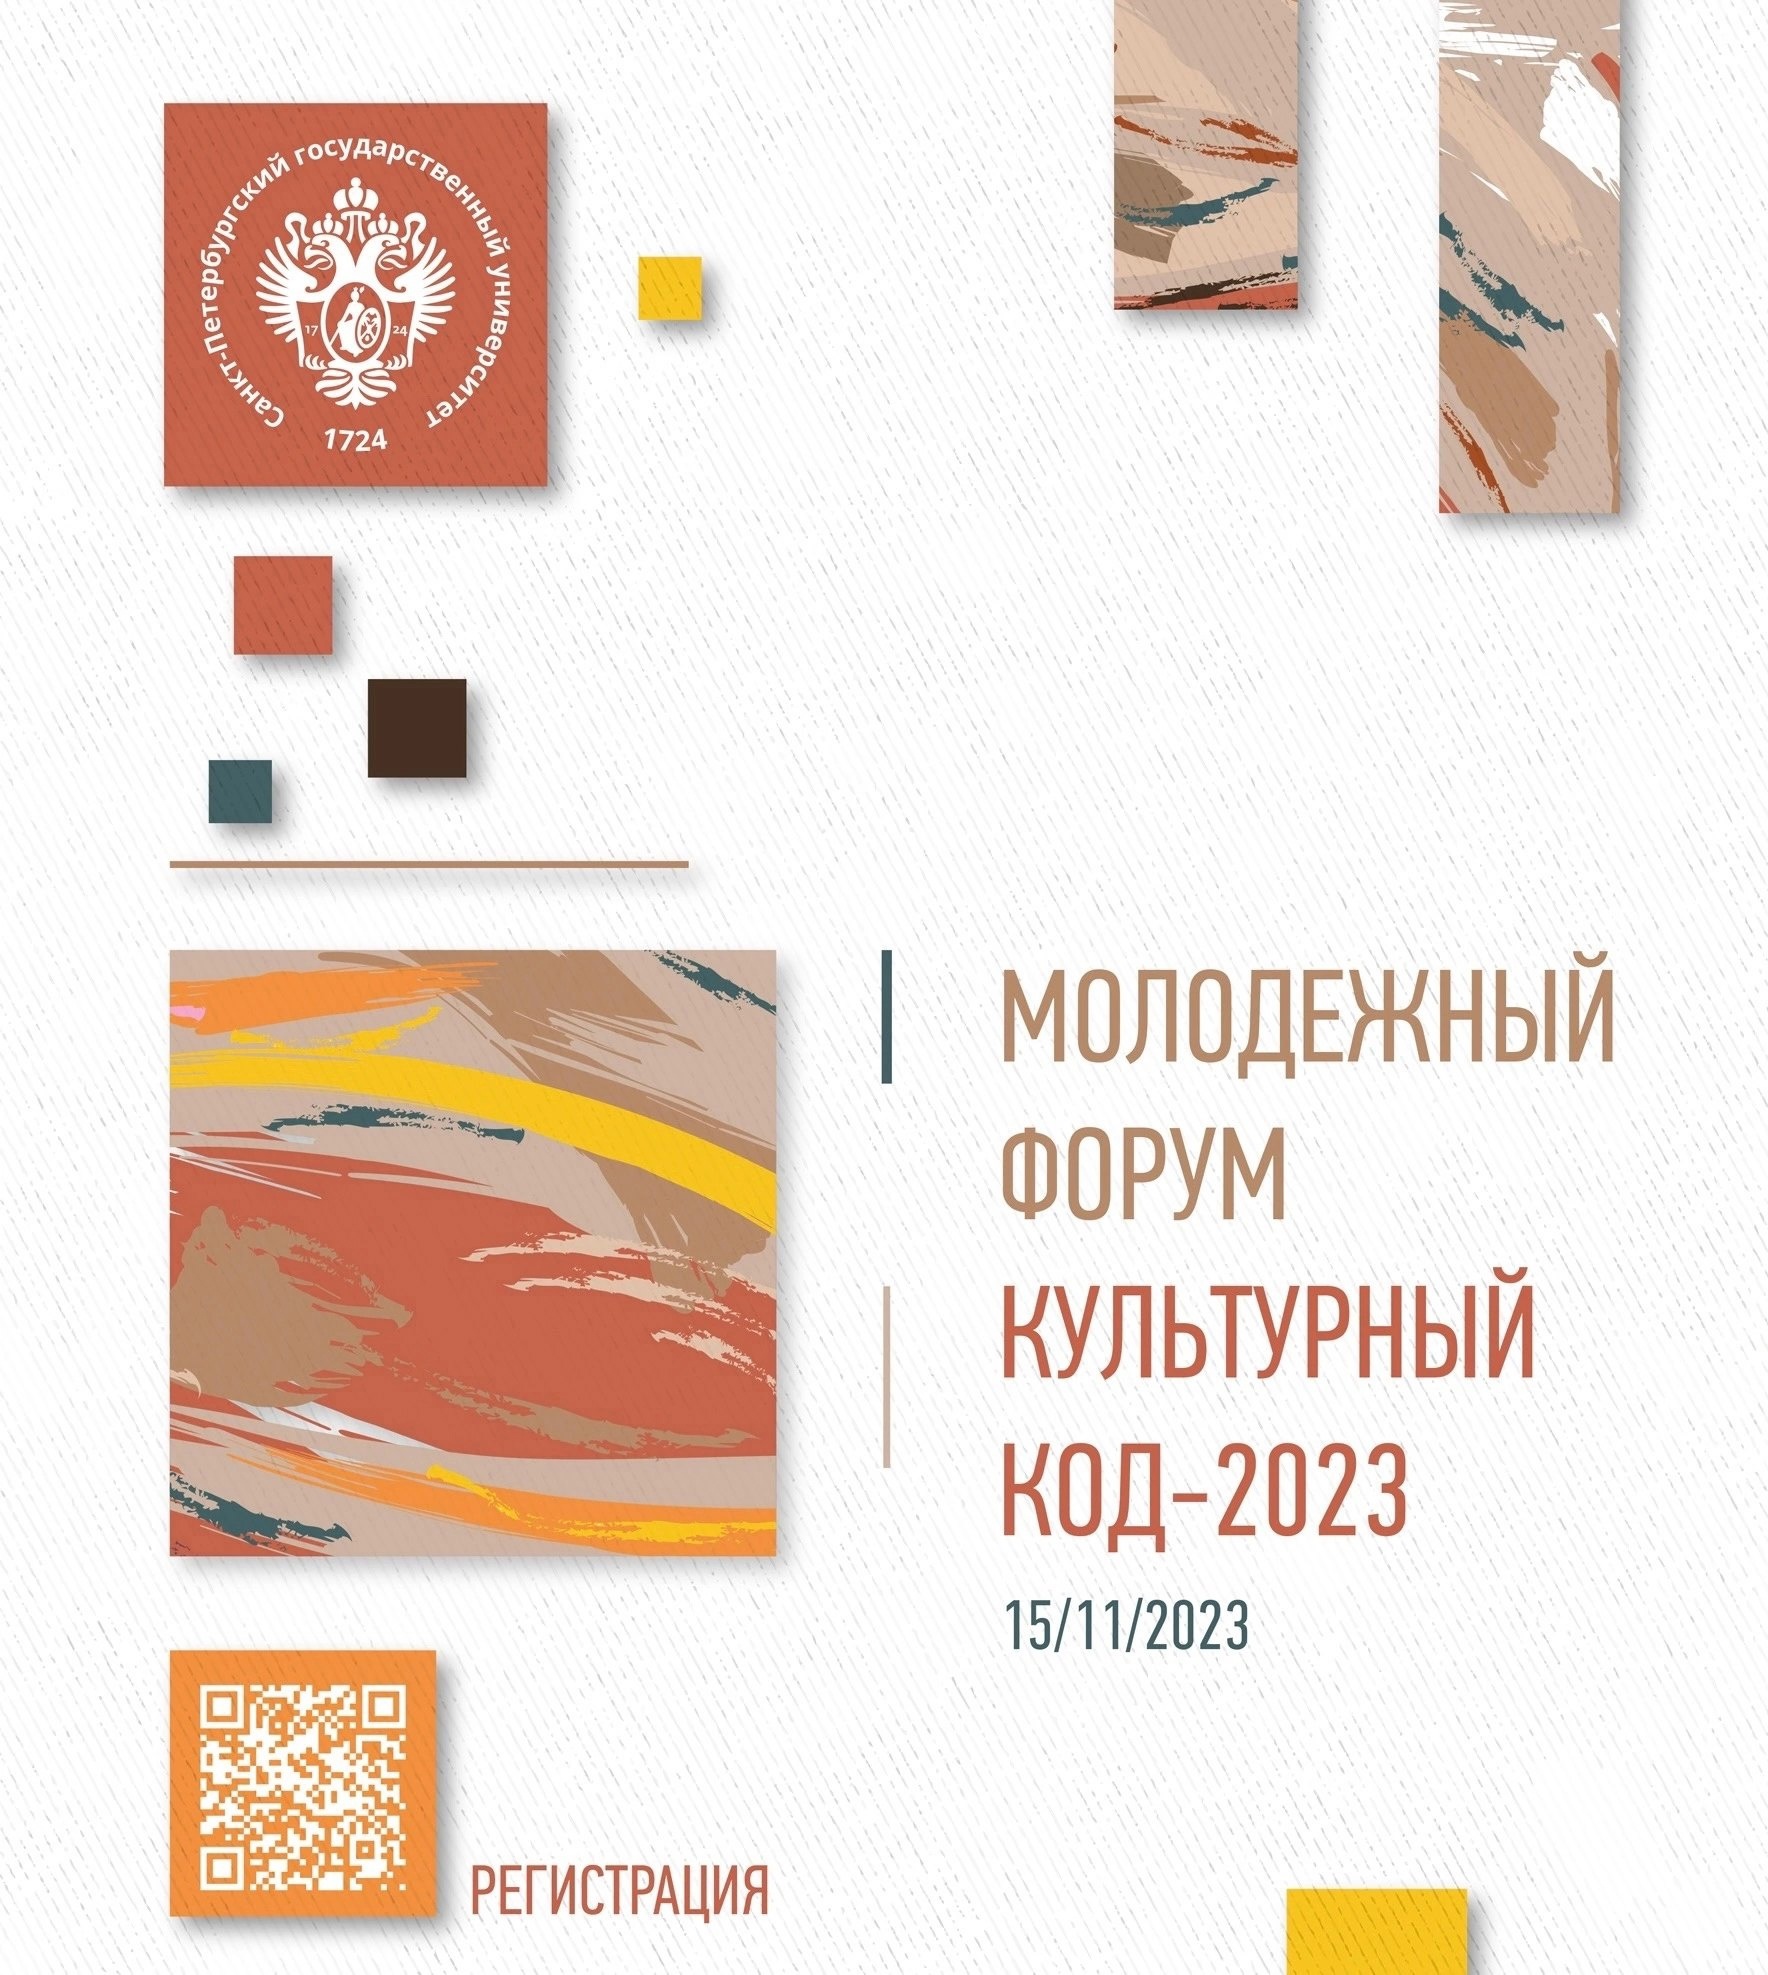 фото: Молодежный форум: «Культурный код — 2023» пройдет в Санкт-Петербурге